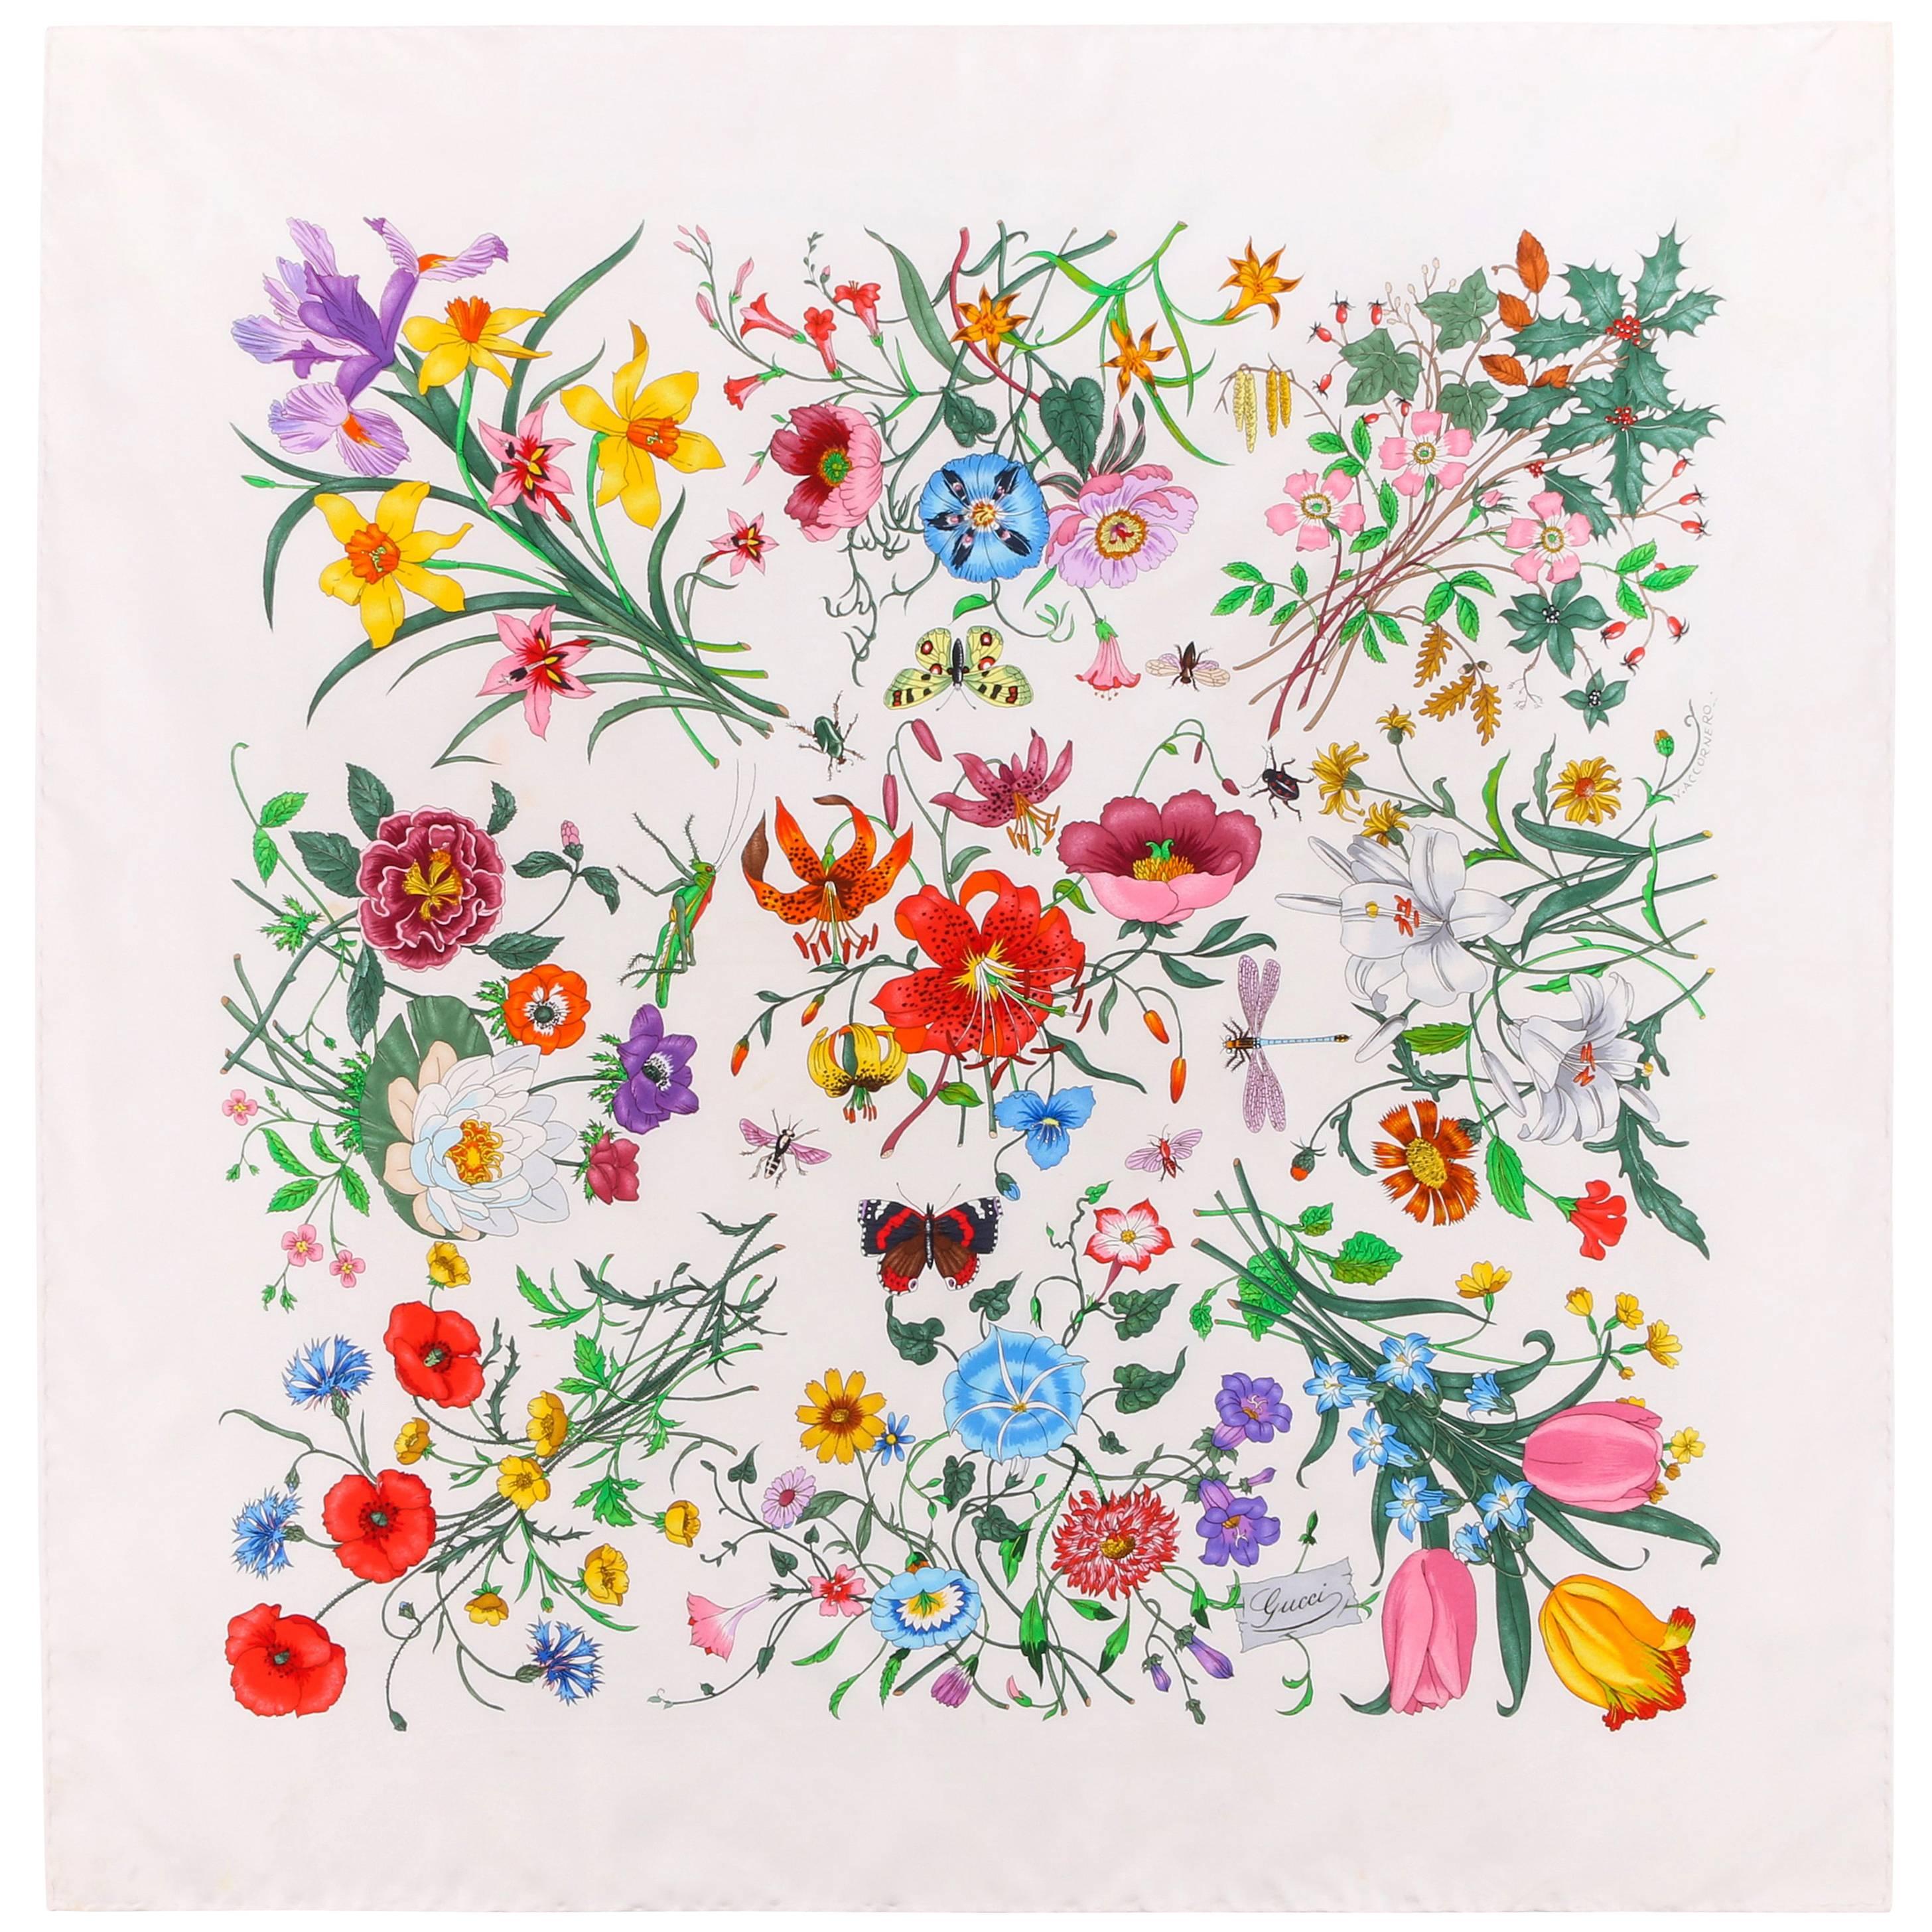 GUCCI Vittorio Accornero "Flora" White Multicolor Iconic Floral Print Silk Scarf